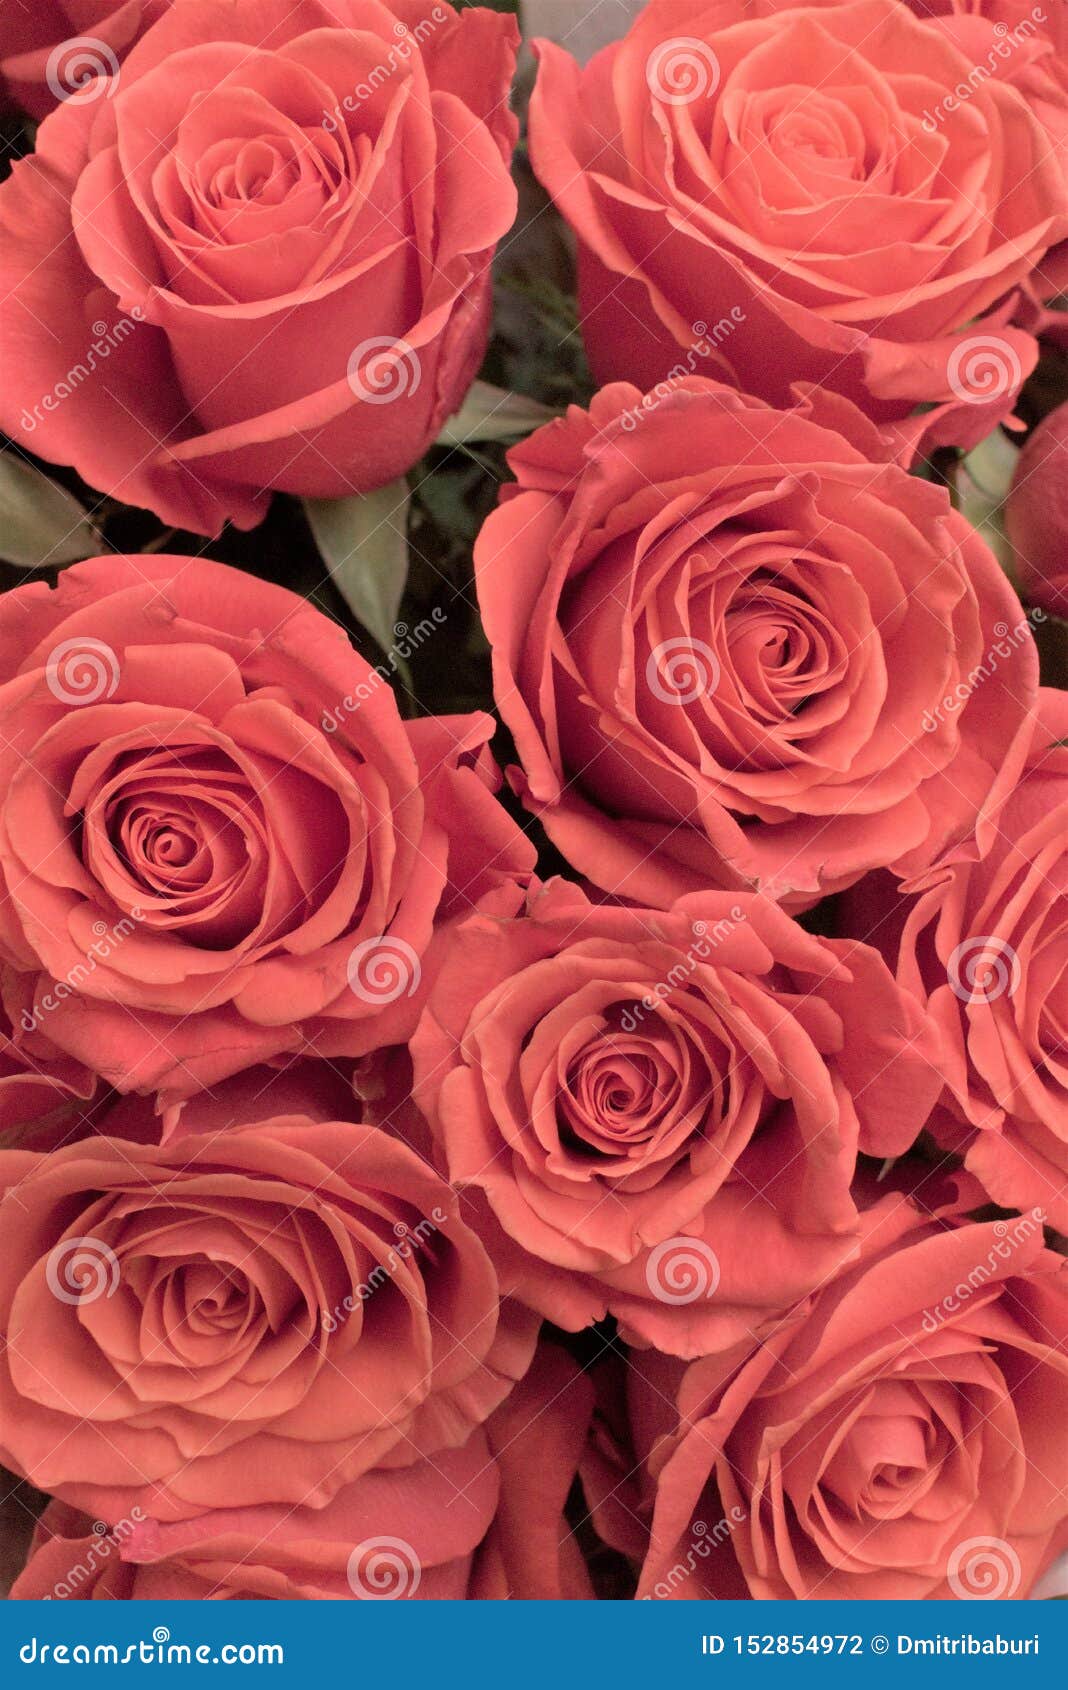 Розы Фото Букеты Красивые Шикарные